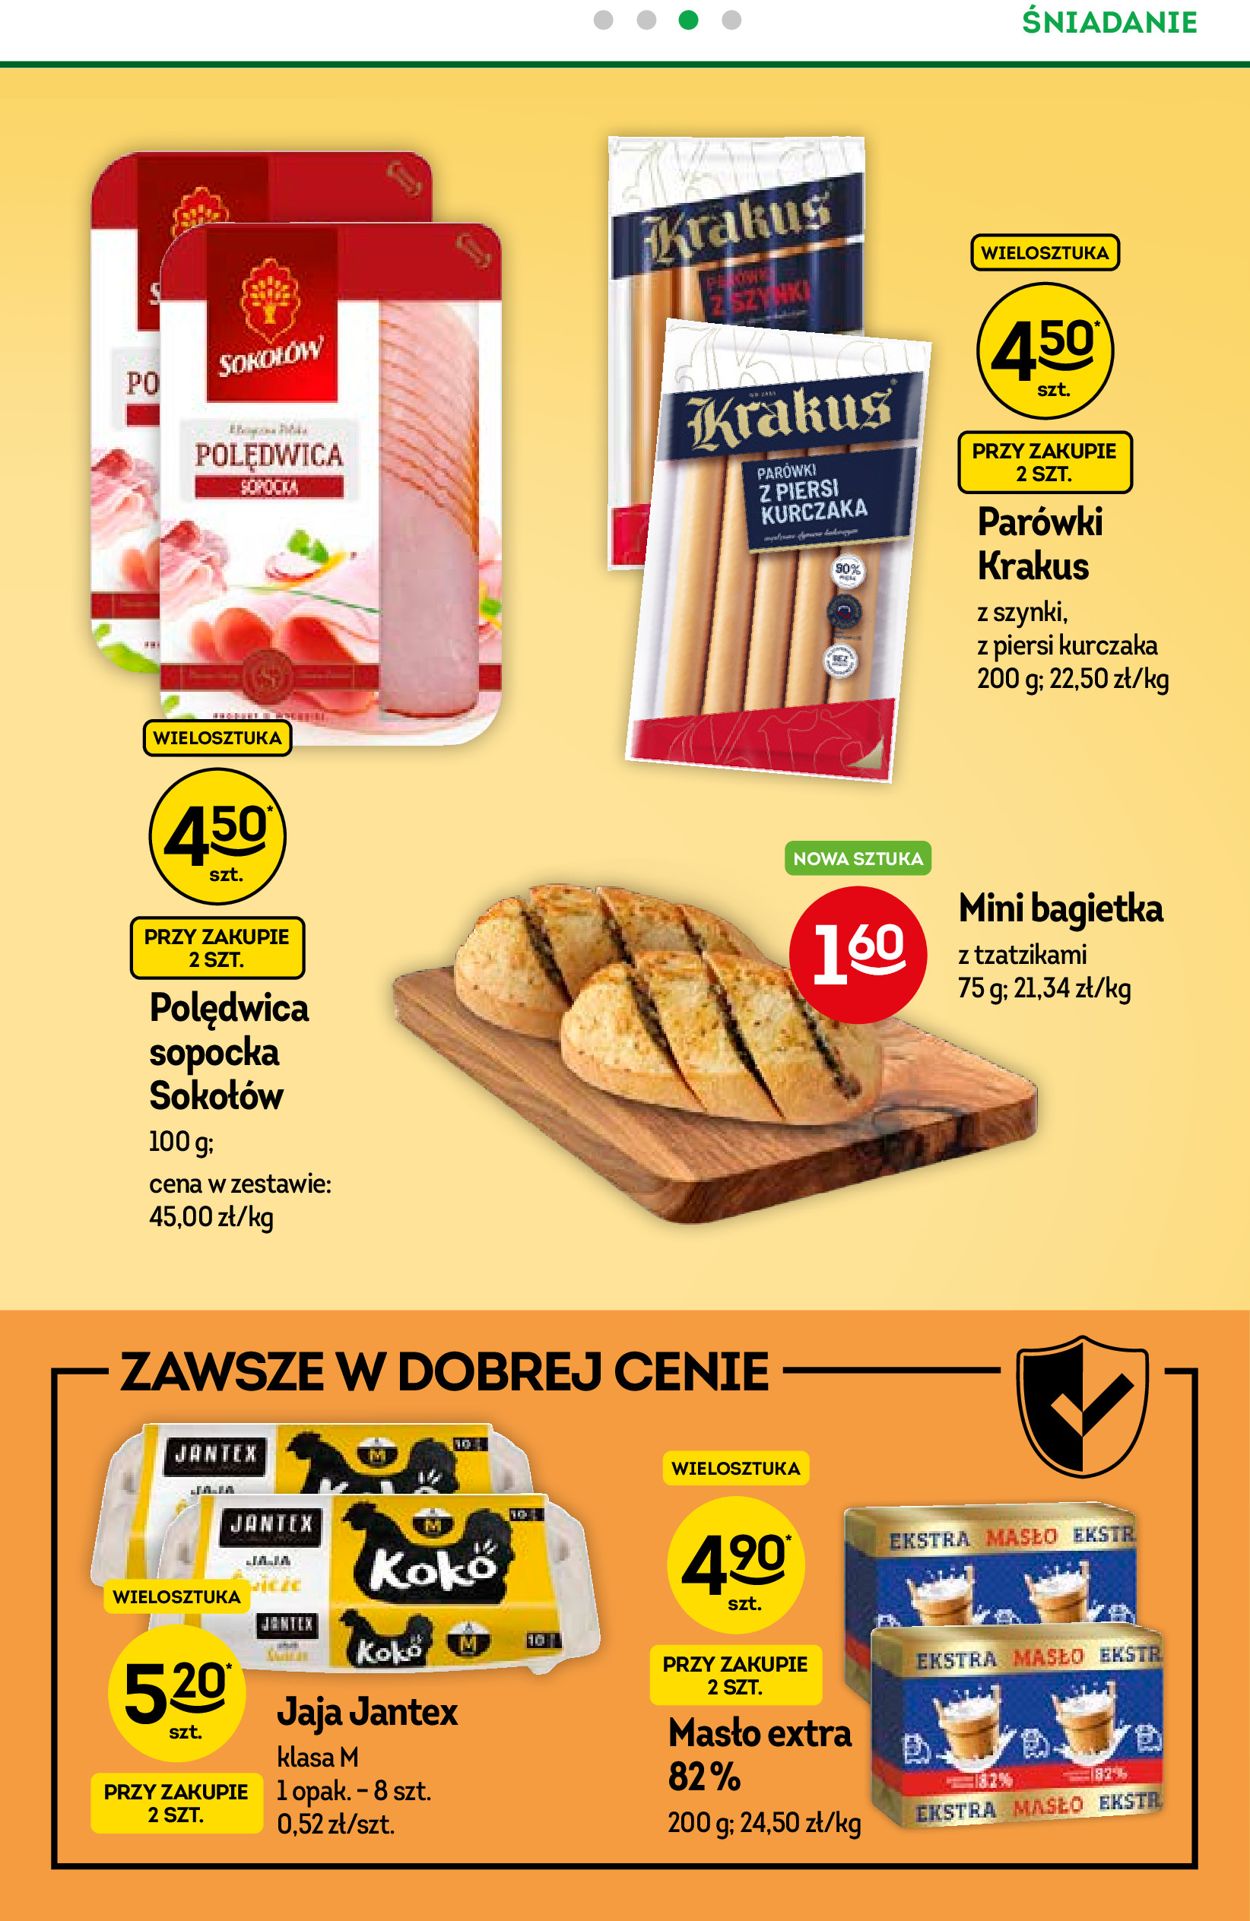 Fresh market Gazetka od 21.07.2021